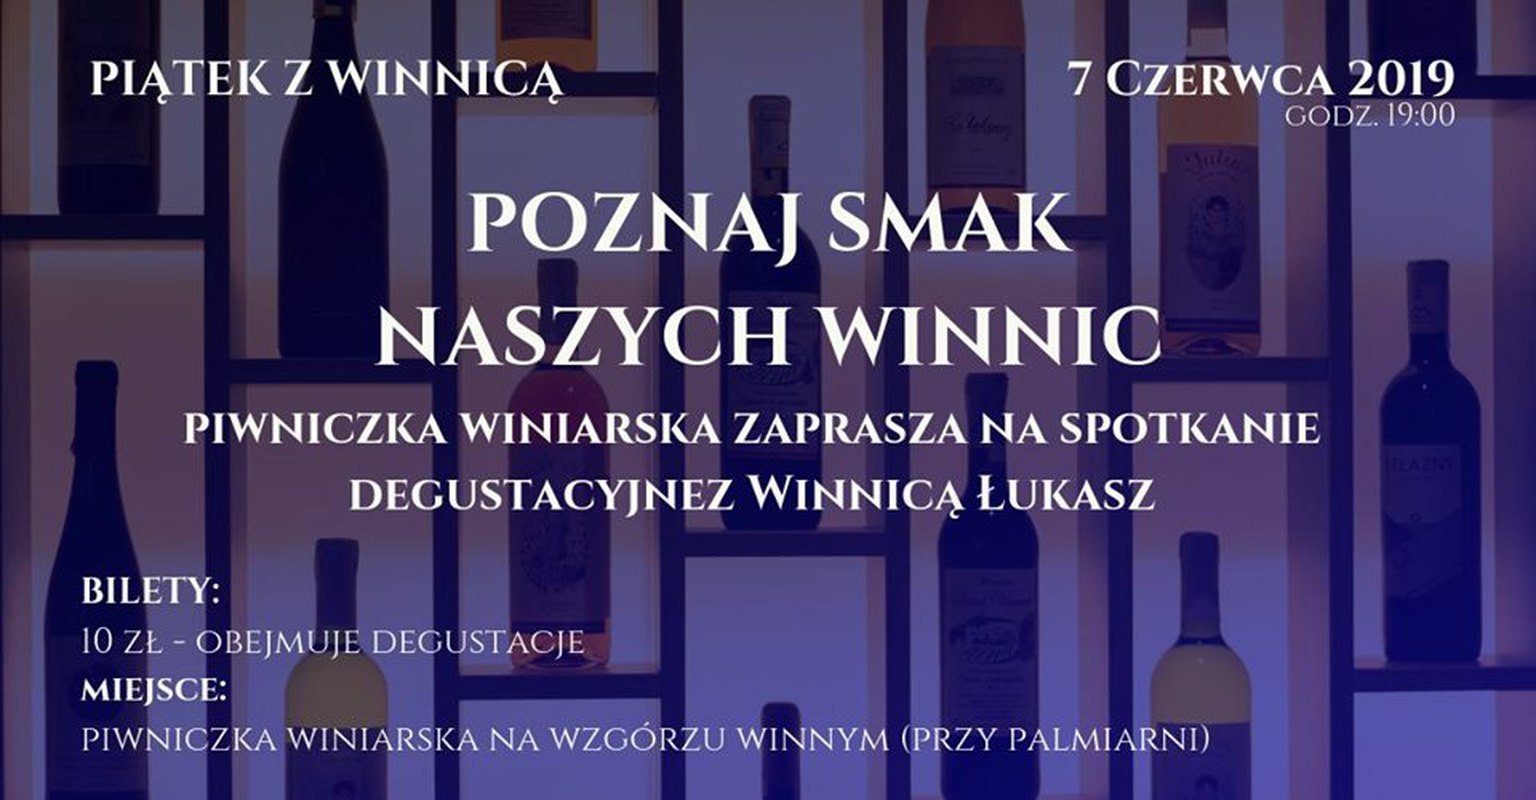 Piątek z Winnicą cz. 18 - Winnica Łukasz